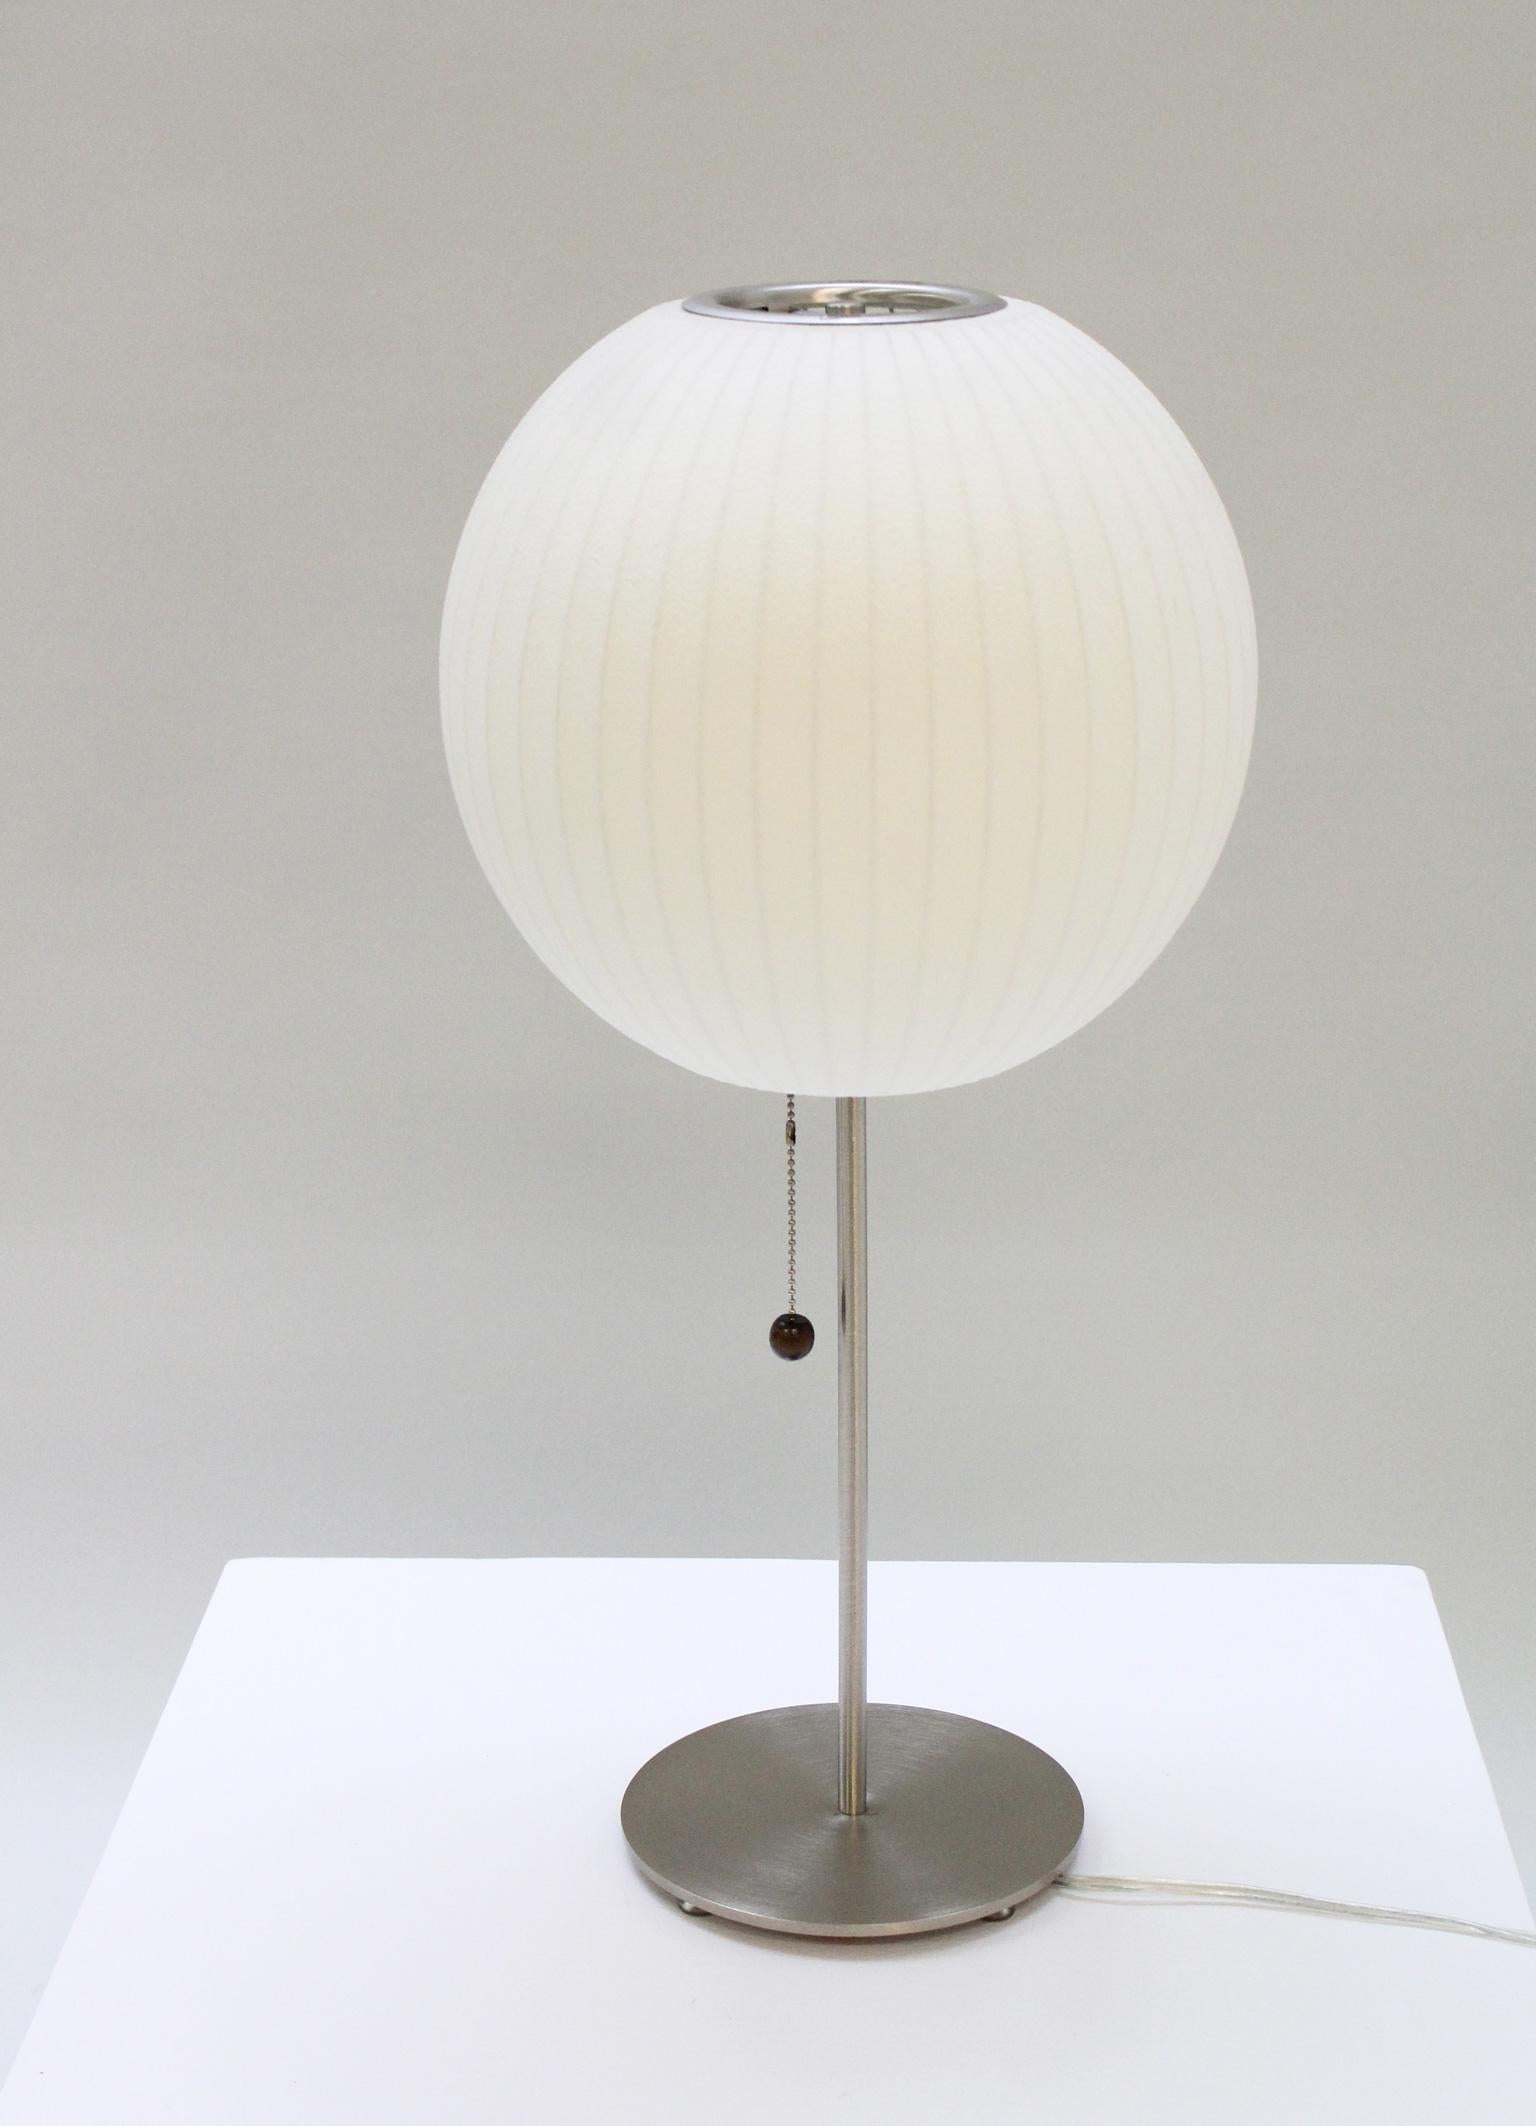 Lampe de table Bubble conçue par George Nelson en 1947-50, USA. Base en acier poli et abat-jour en métal et vinyle. Il s'agit d'une édition Modernica.